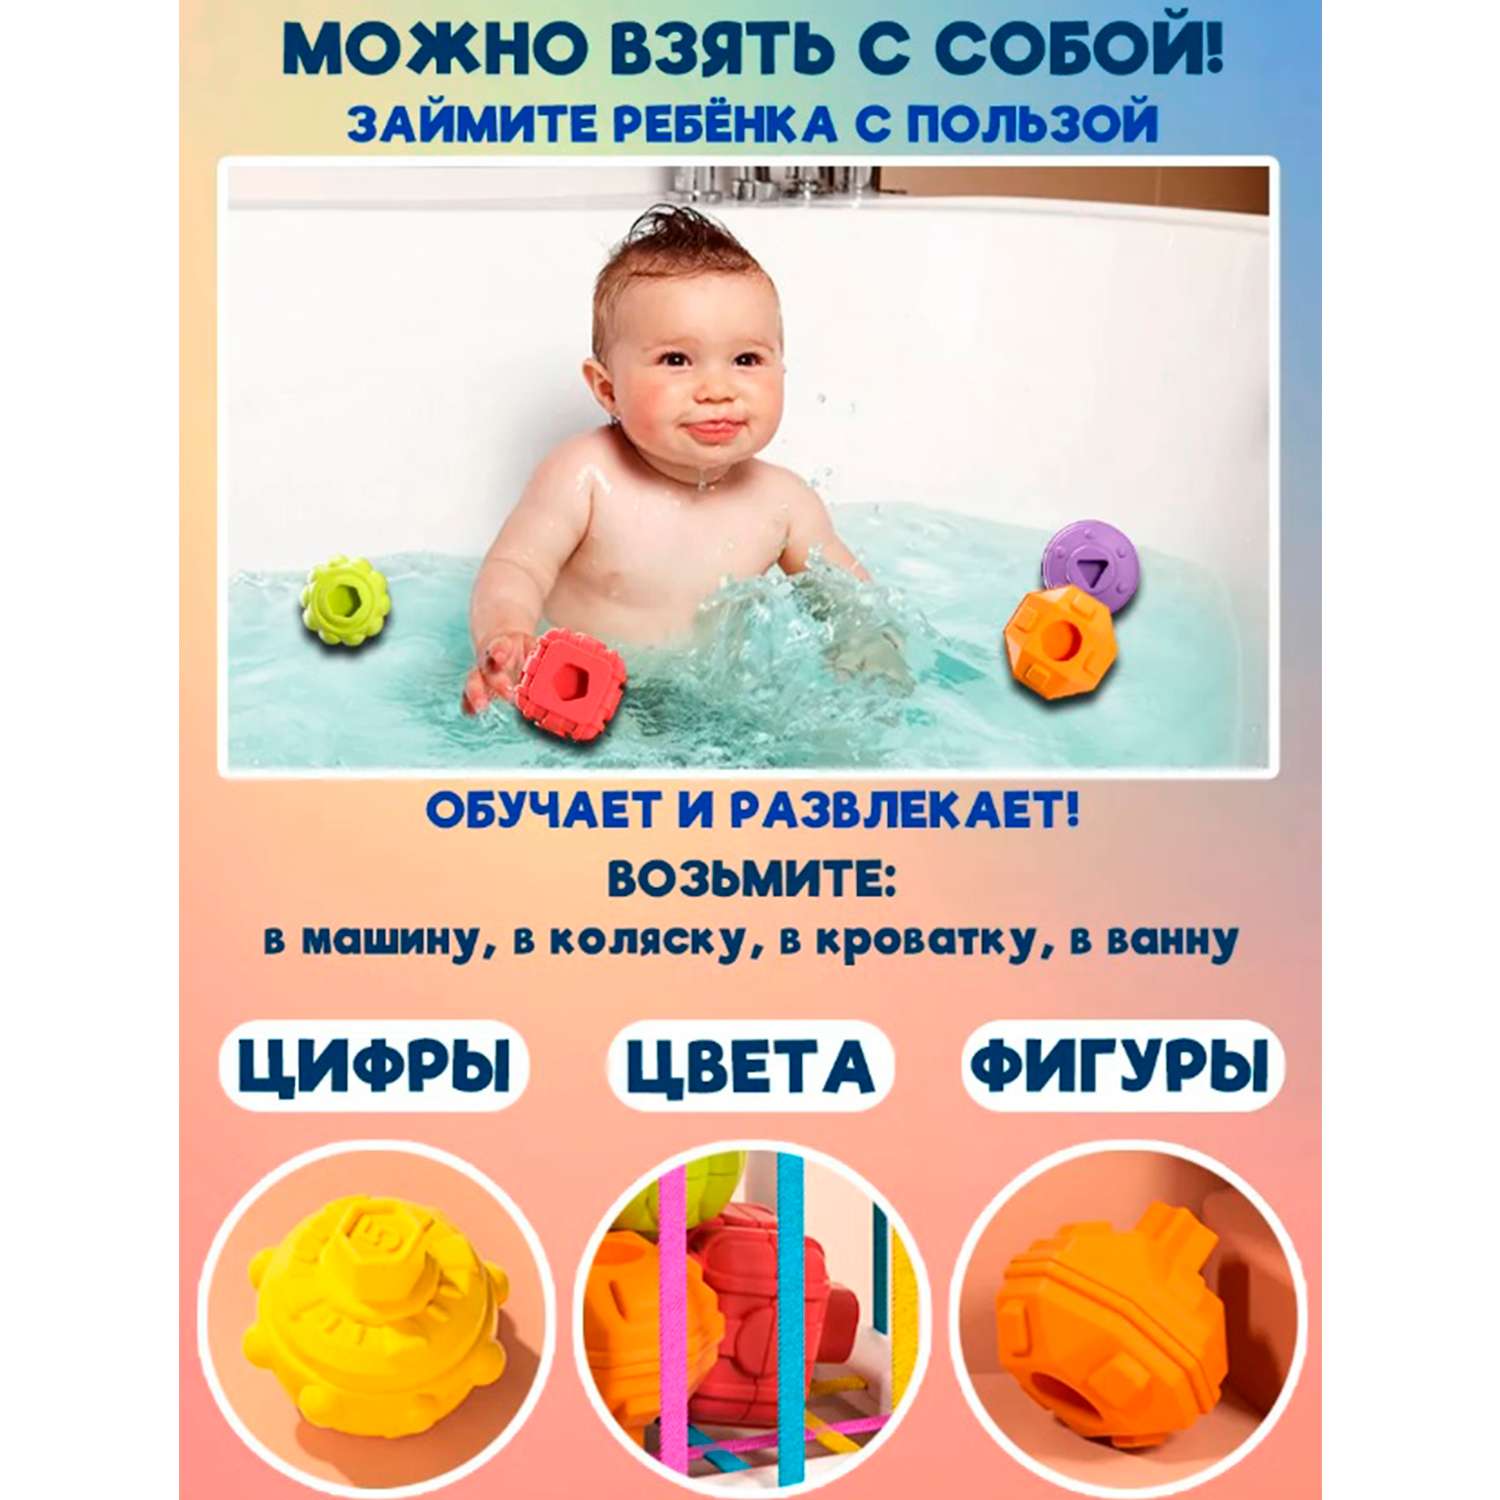 Сортер Монтессори ТОТОША развивающая игрушка для детей и новорождённых - фото 6